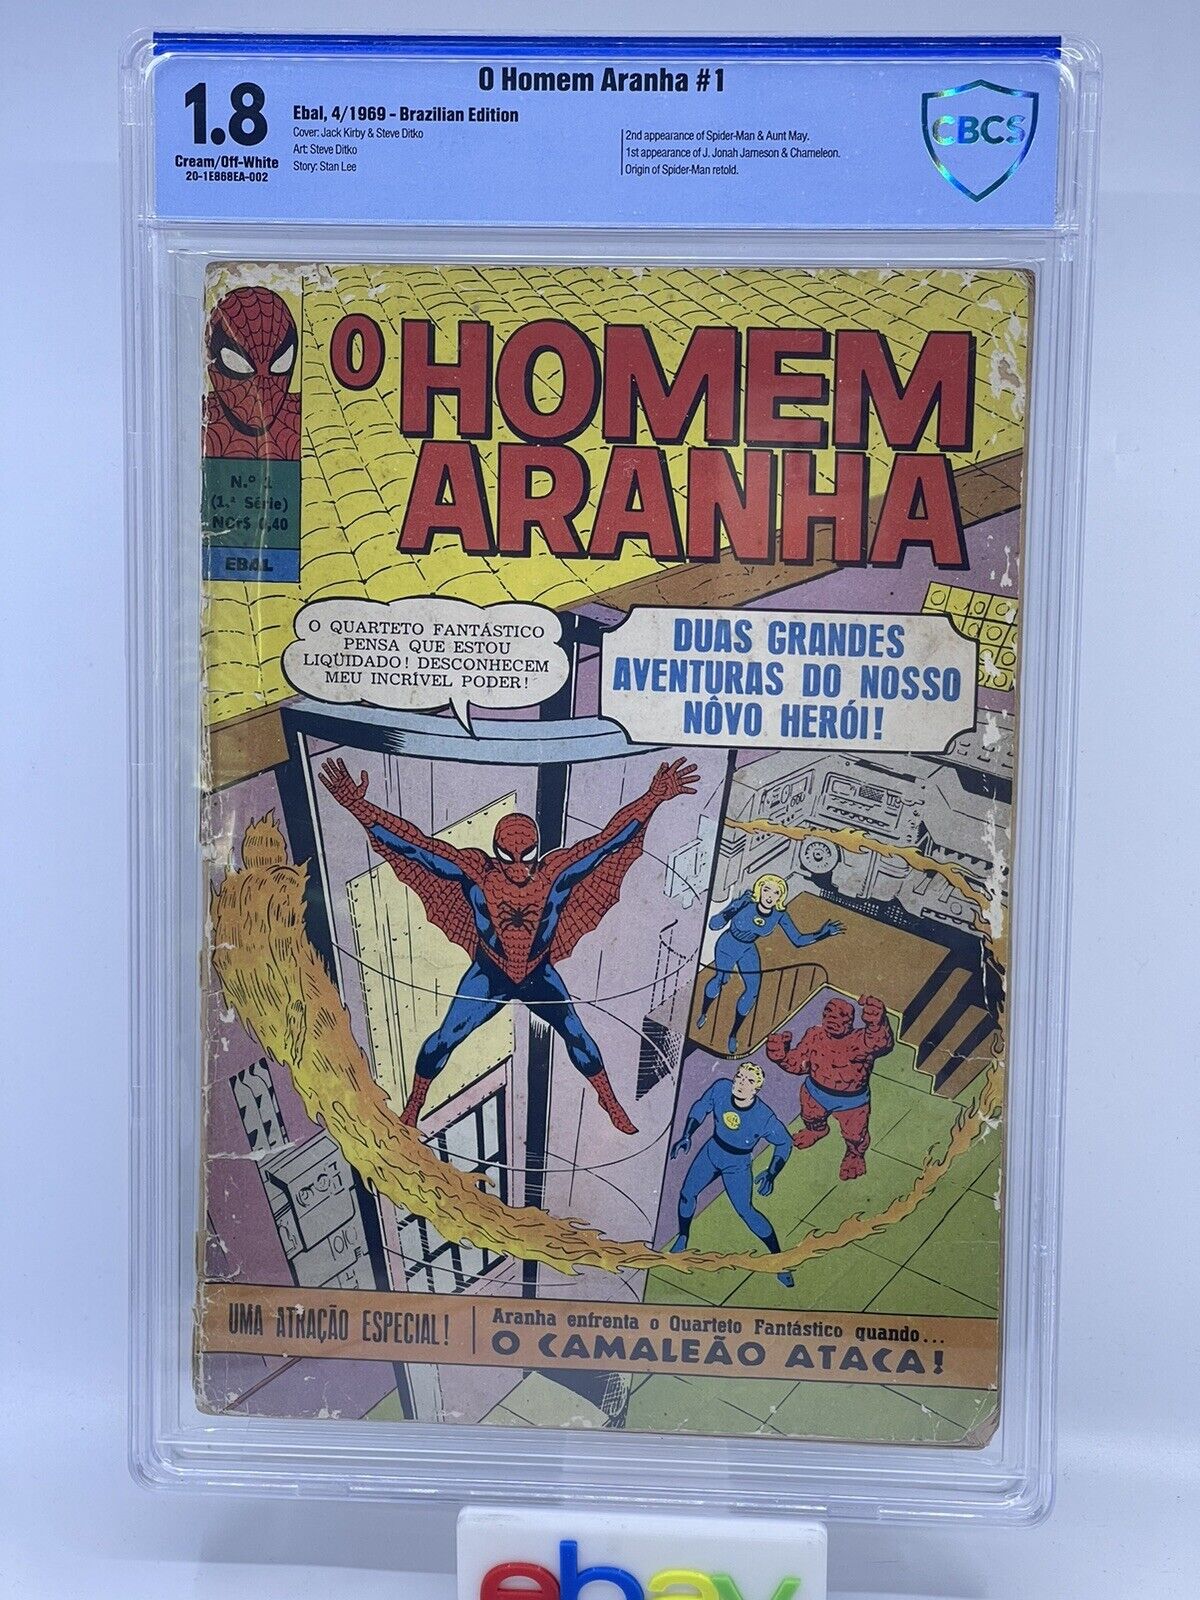 O Homem Aranha #1 April 1969 CBCS 1.8 Brazilian Amazing Spider-Man Rare graded